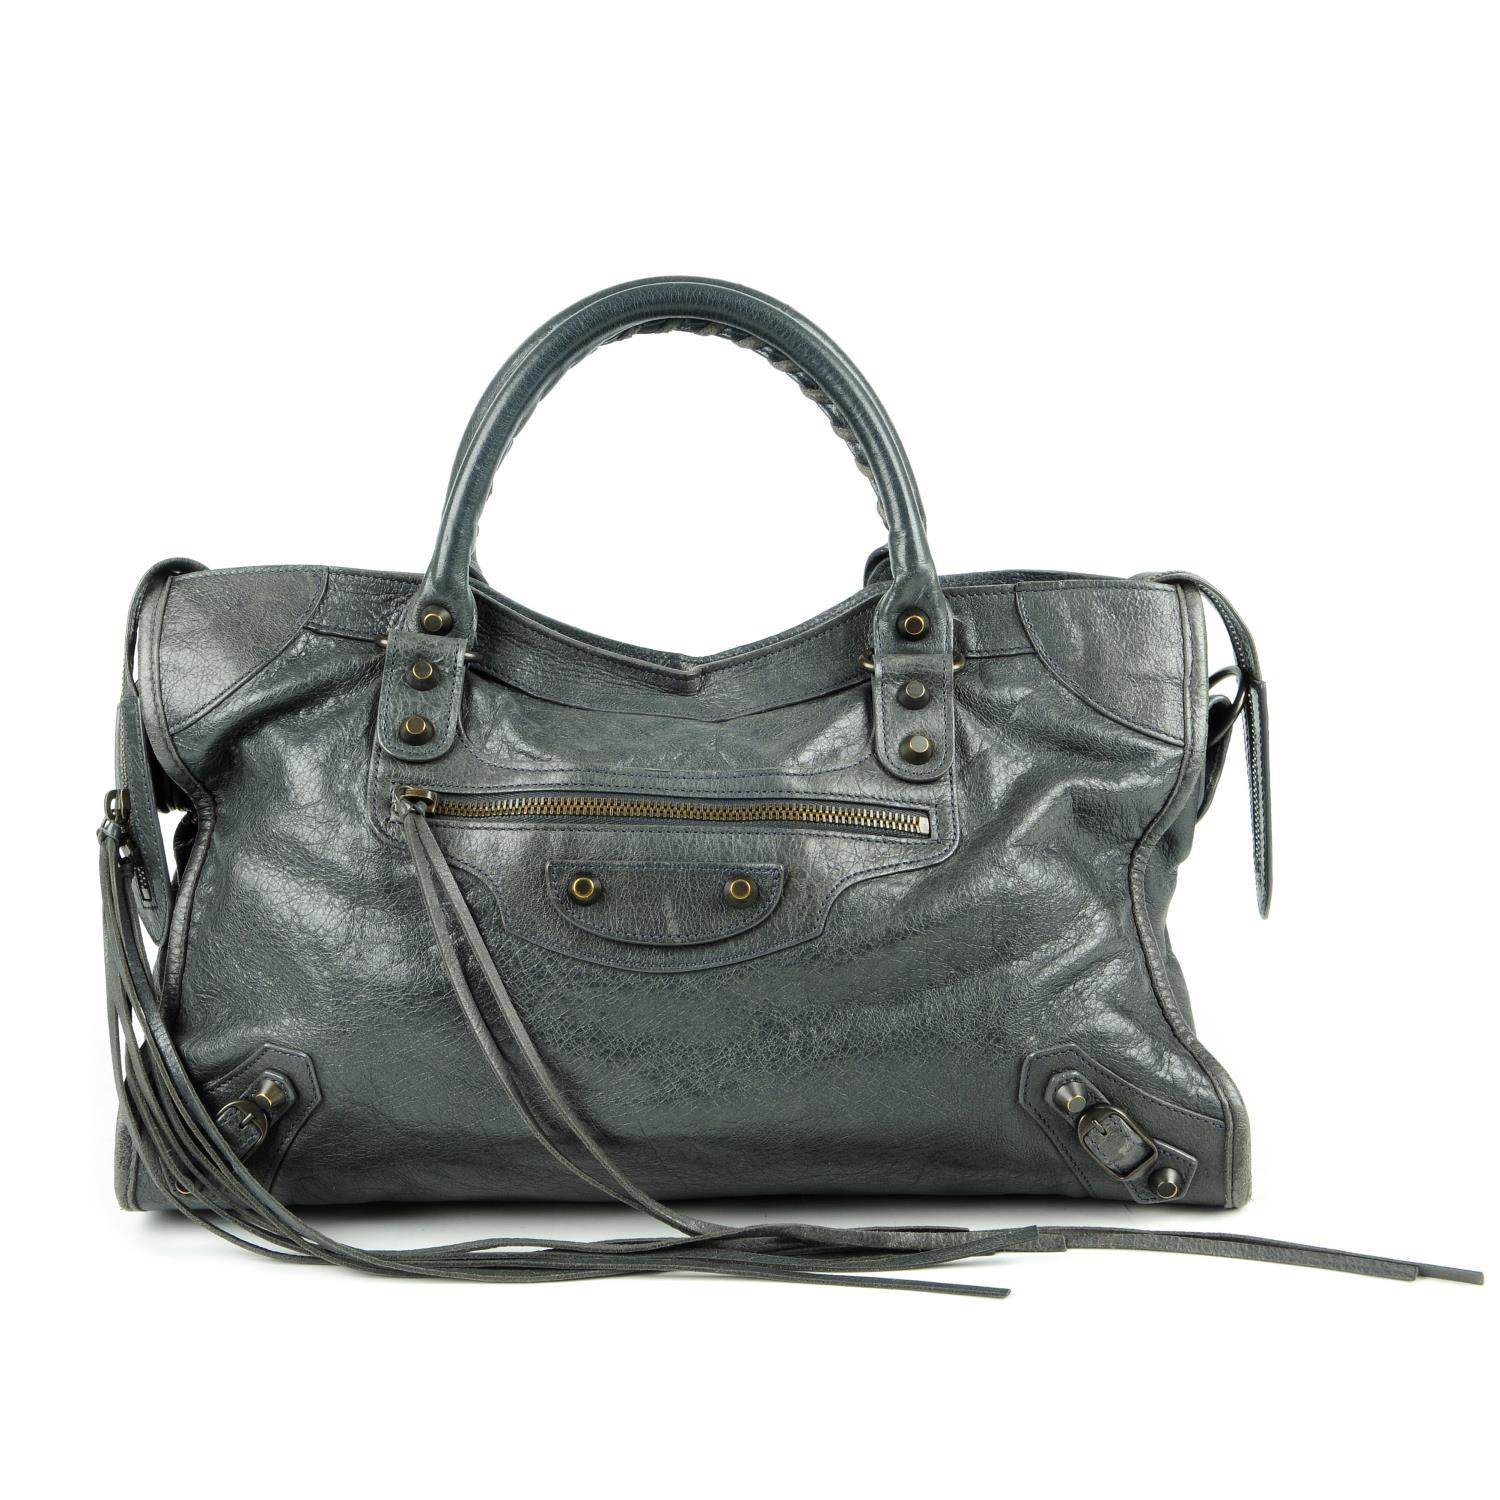 BALENCIAGA - a grey Classic City handbag. Crafted from glazed grey